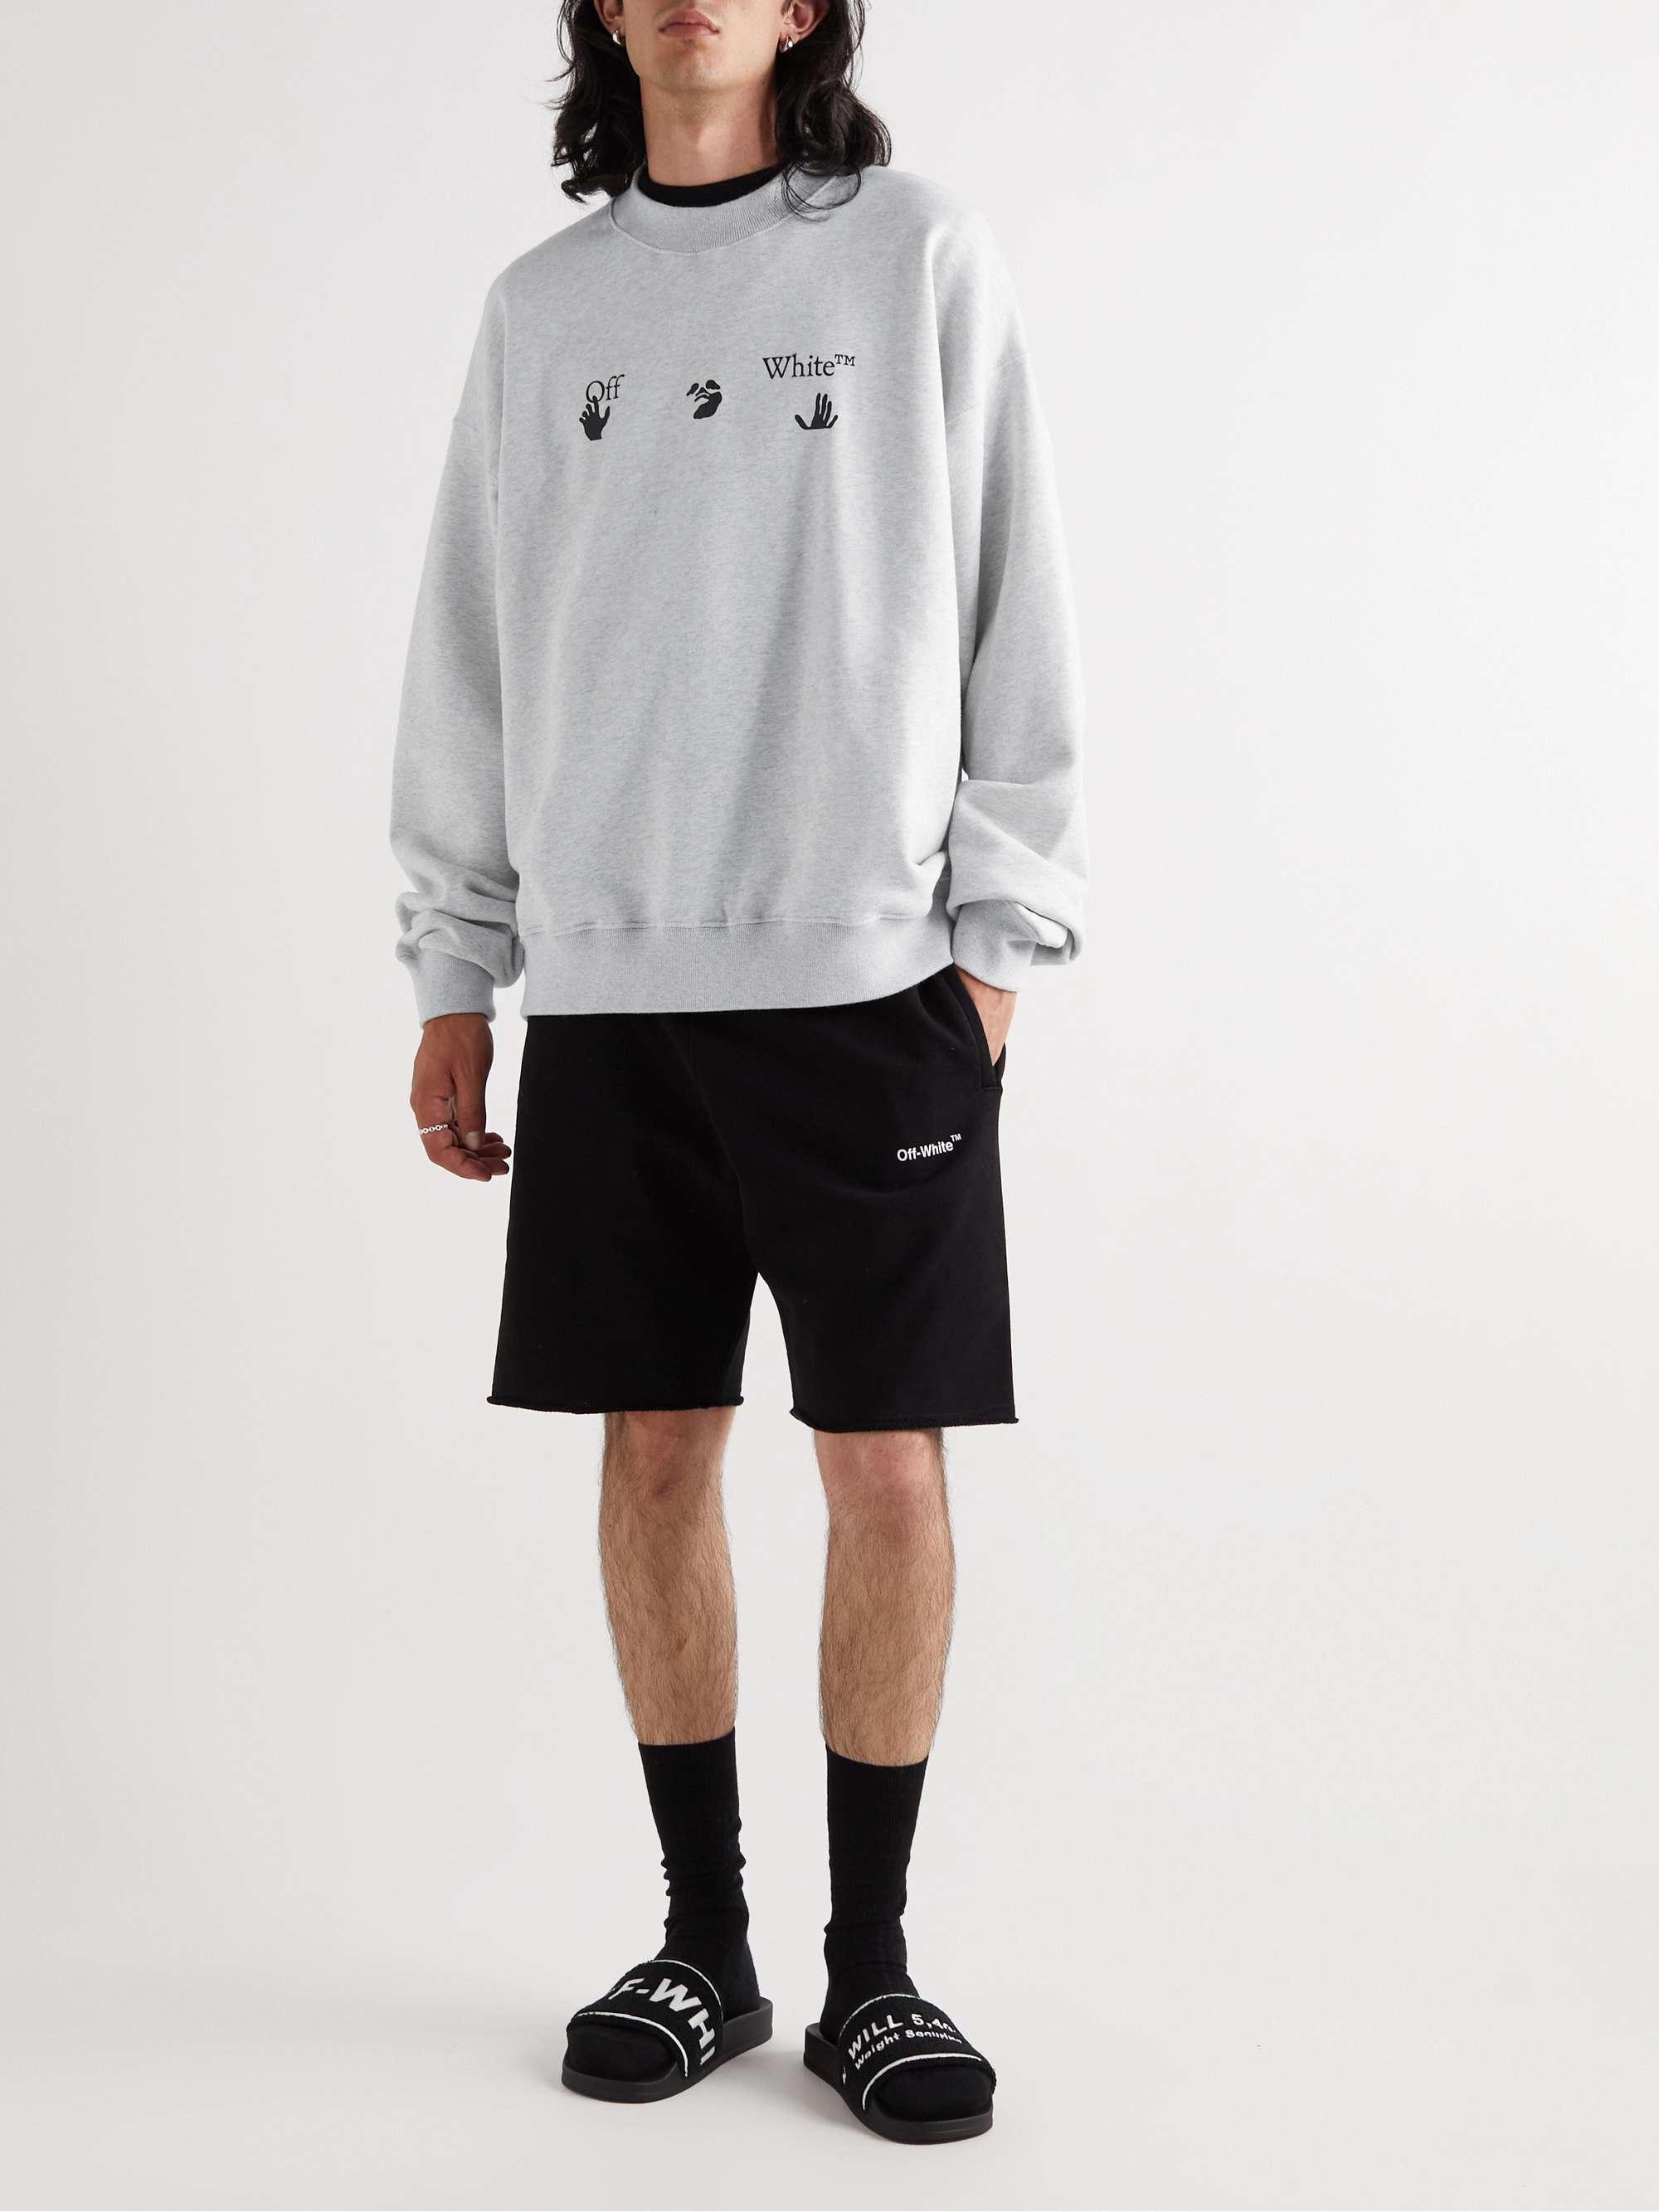 Afbrydelse sagtmodighed Måge OFF-WHITE Skate Intarsia-Cotton Sweatshirt for Men | MR PORTER